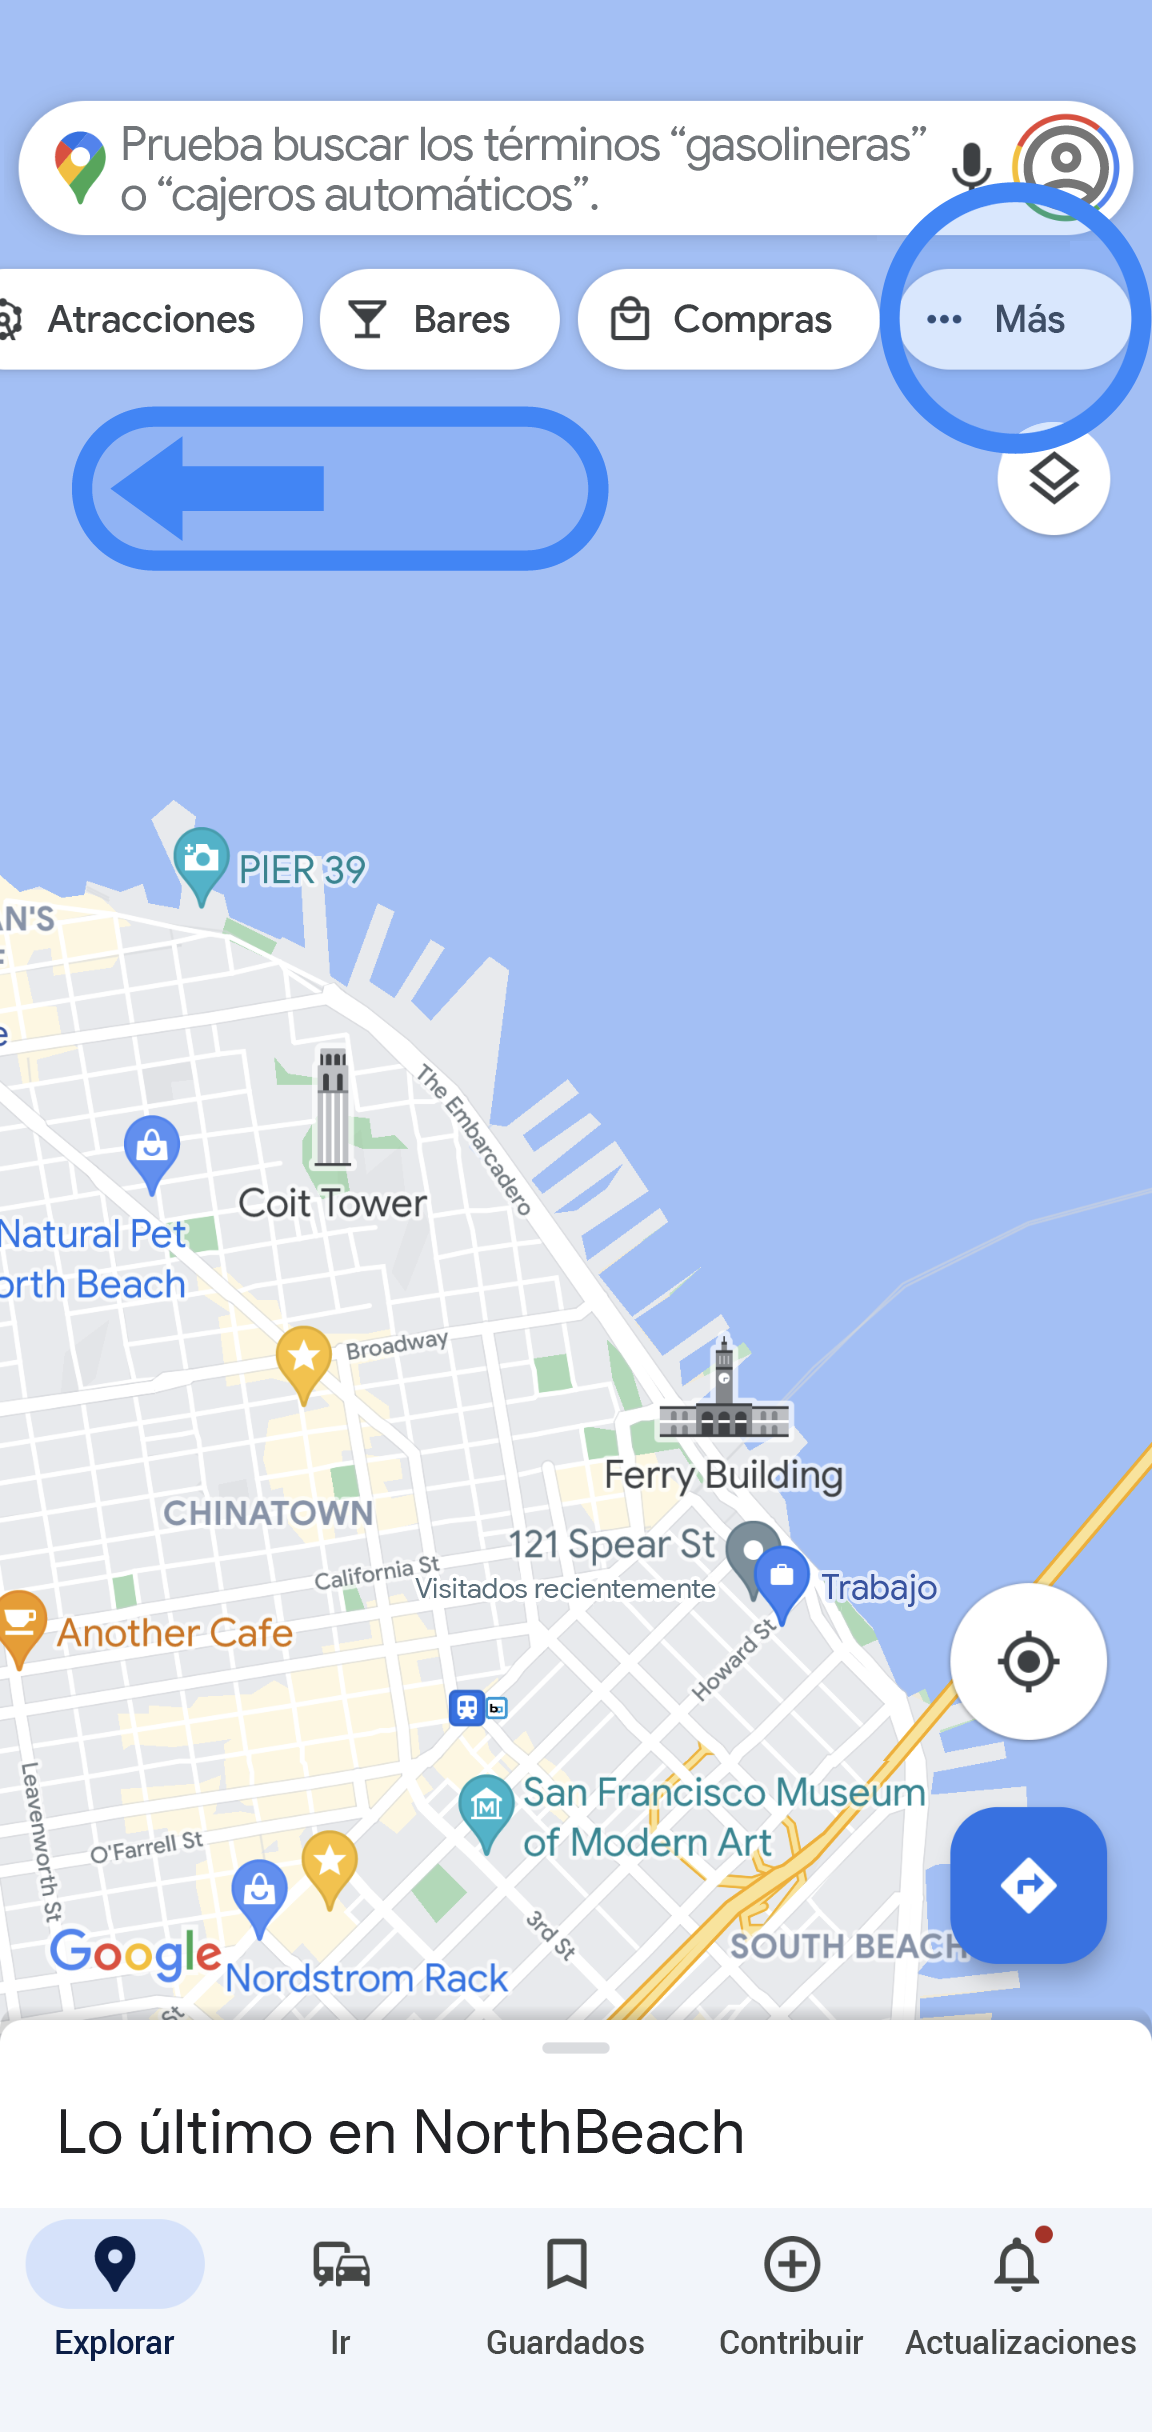 La app de Google Maps muestra el mapa de un área. Algunas pestañas de la barra de búsqueda se desplazaron hasta el extremo derecho. La última pestaña de la derecha, con un círculo azul, dice "Más".